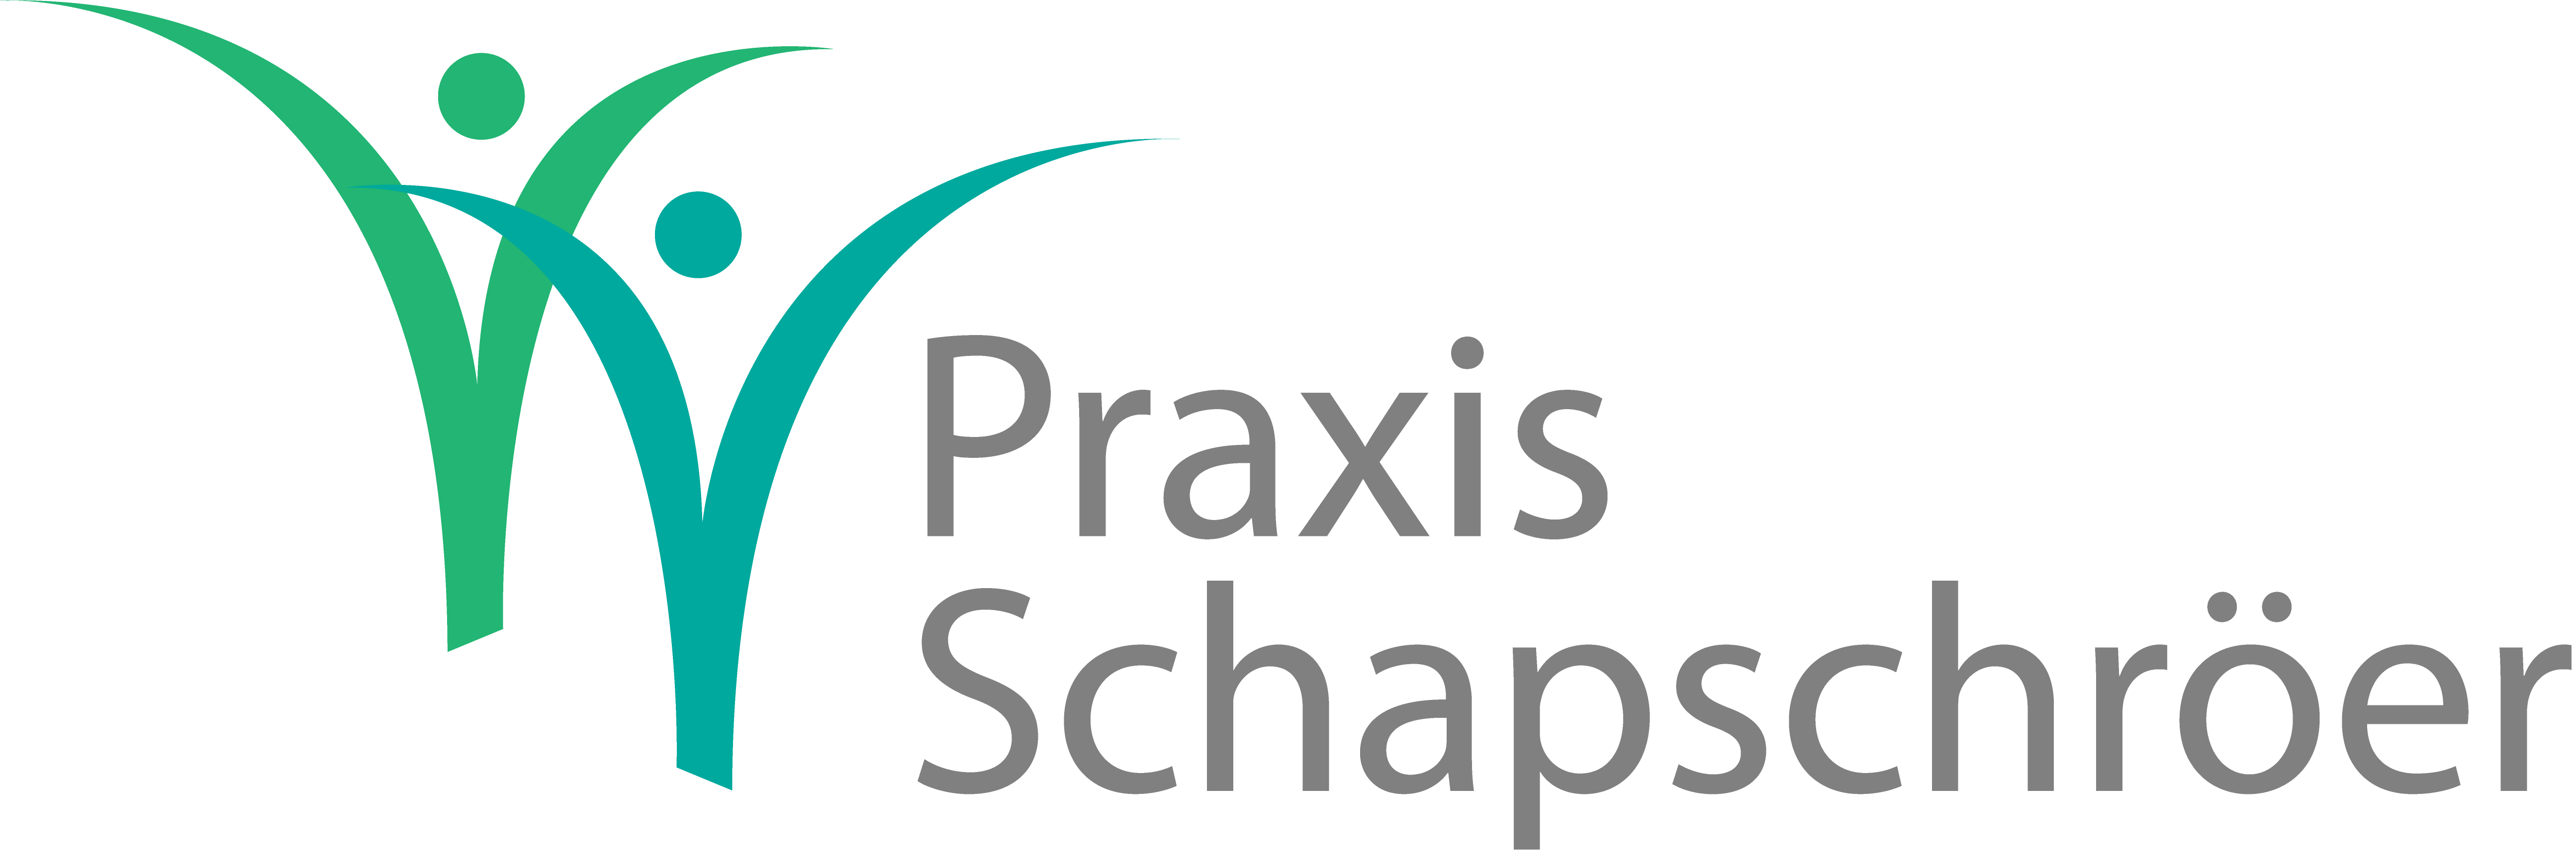 Praxis_Schapschroeer_Lauterbach